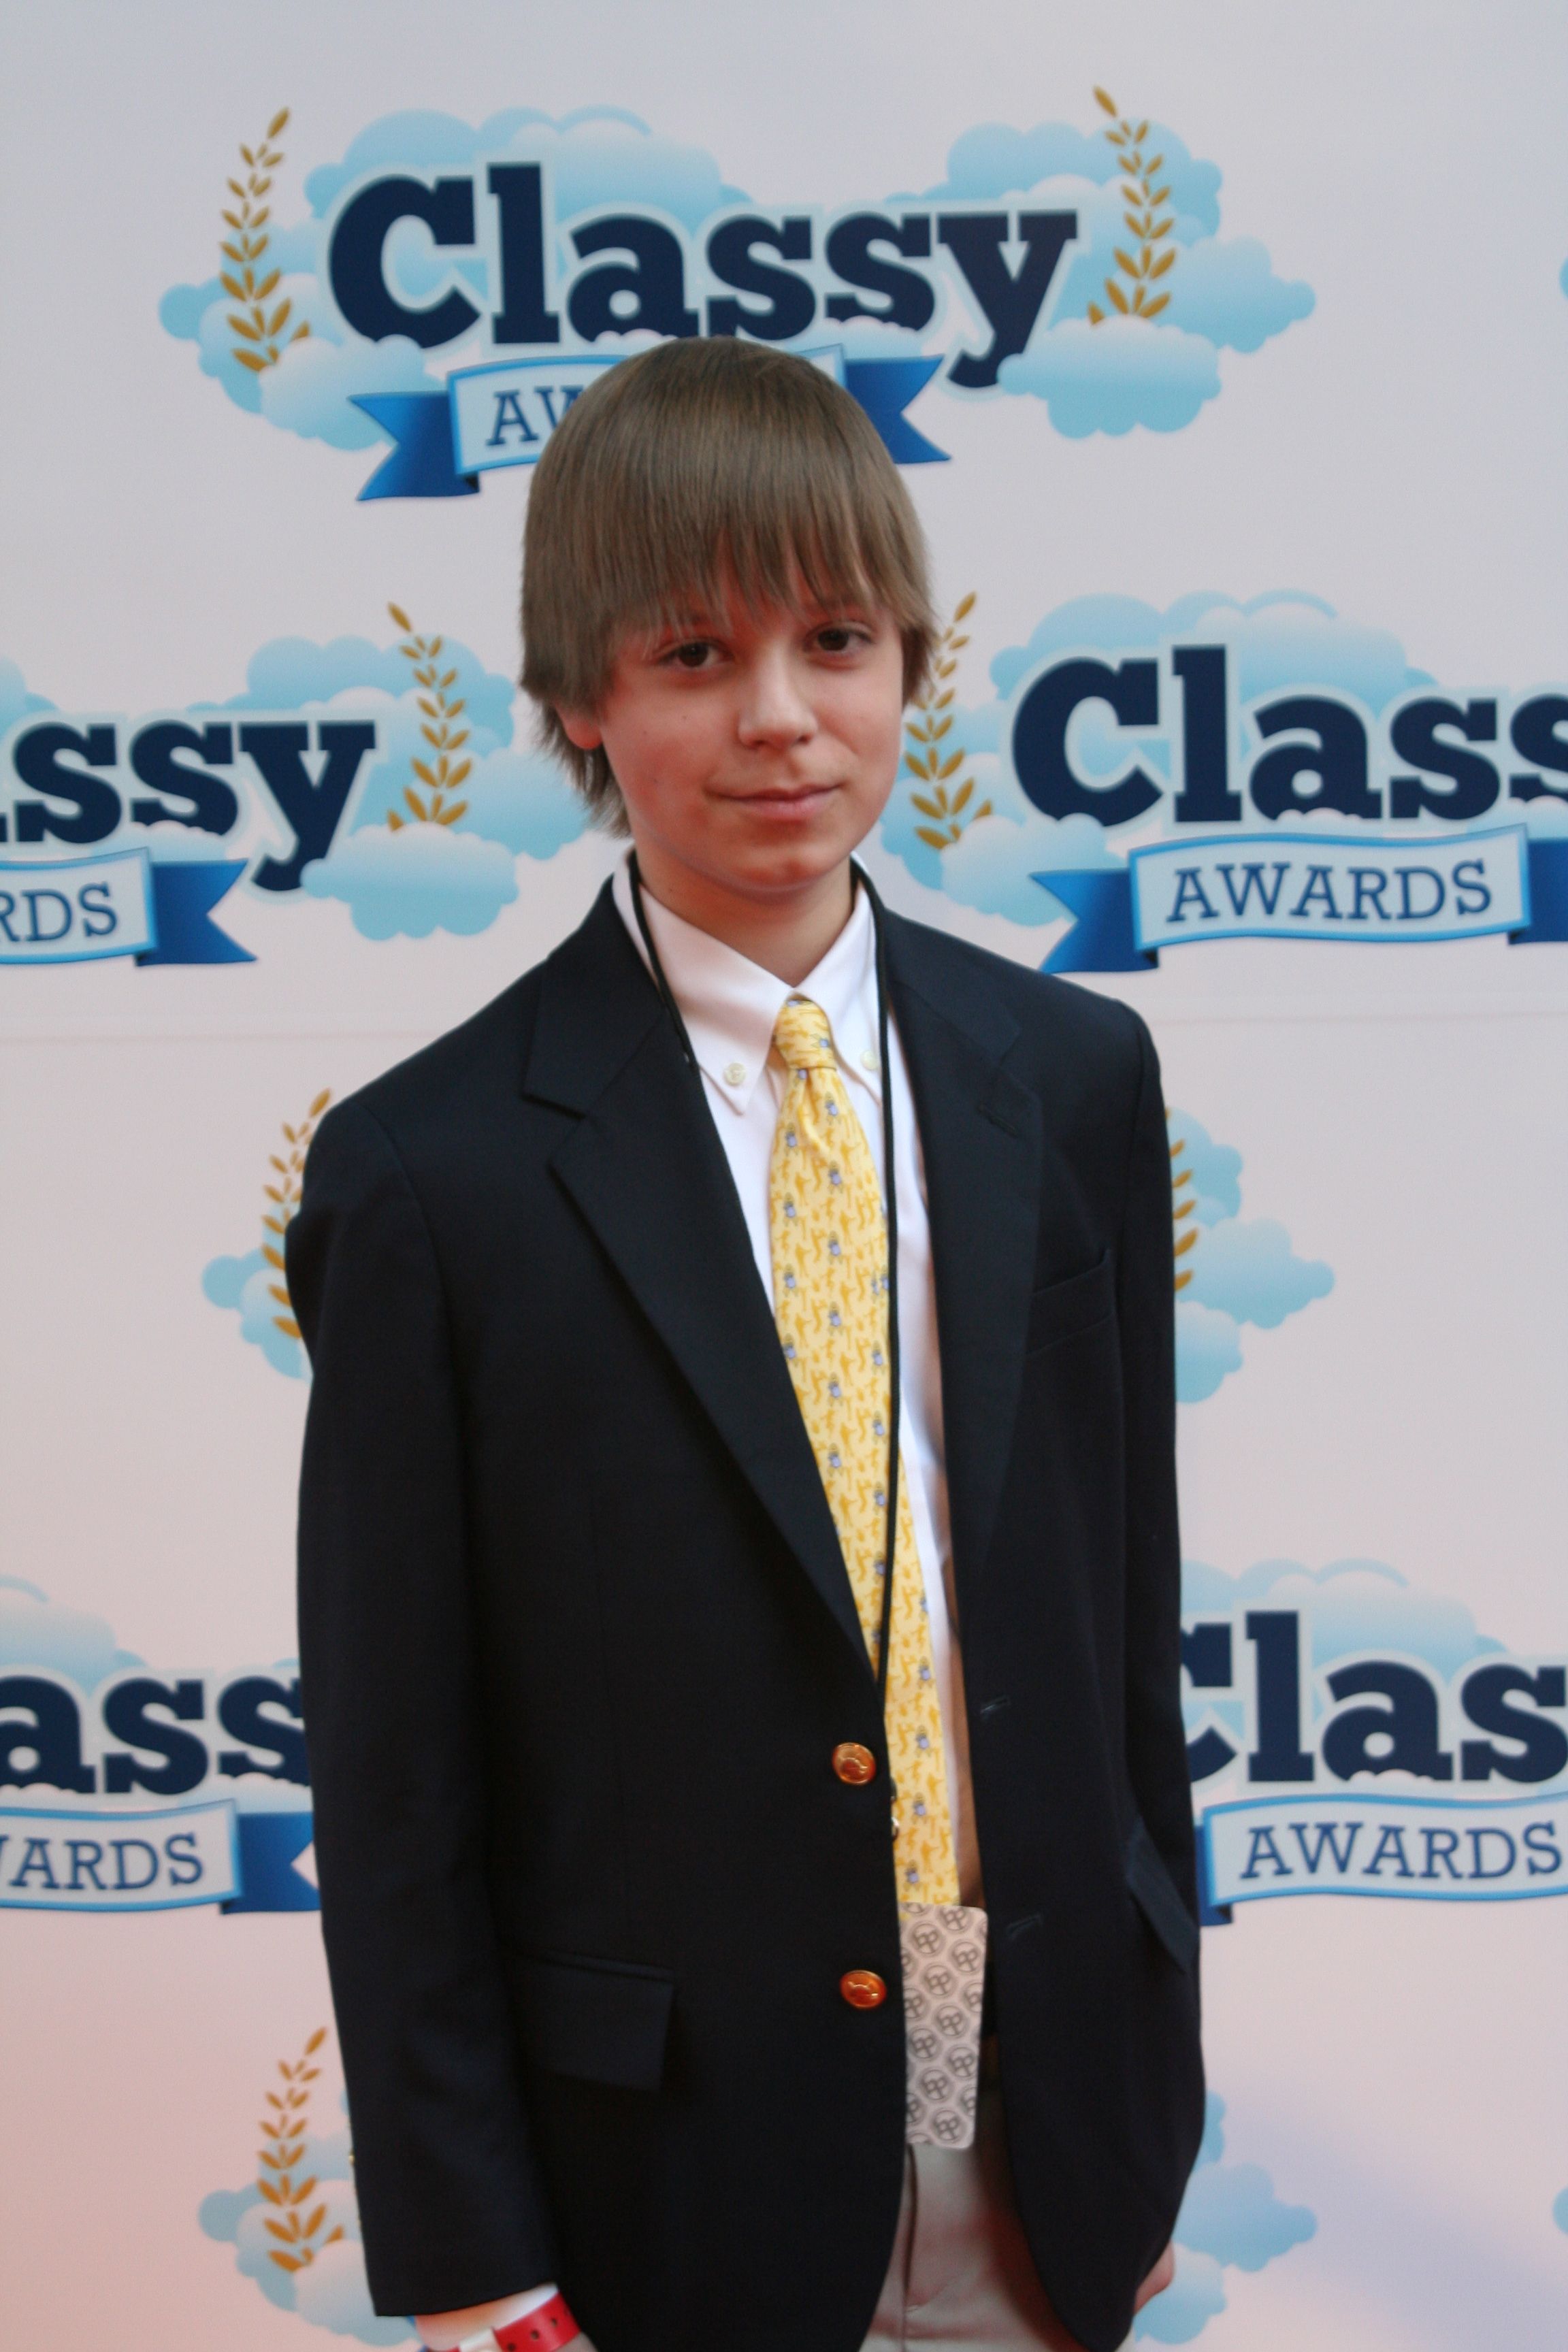 Classy Awards 2011